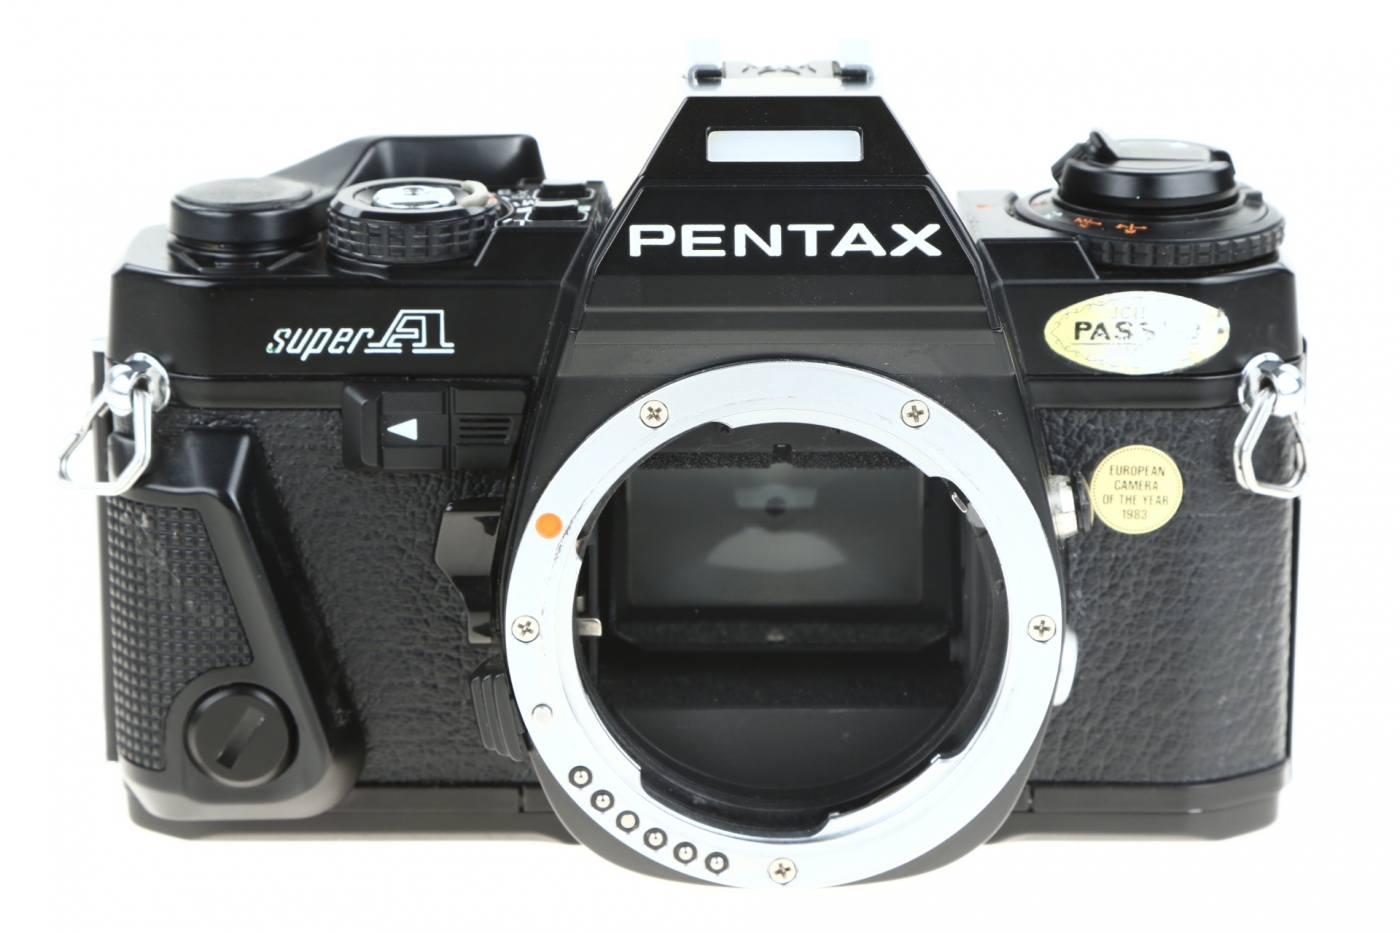 5 analogowych aparatów małoobrazkowych Pentax Super A